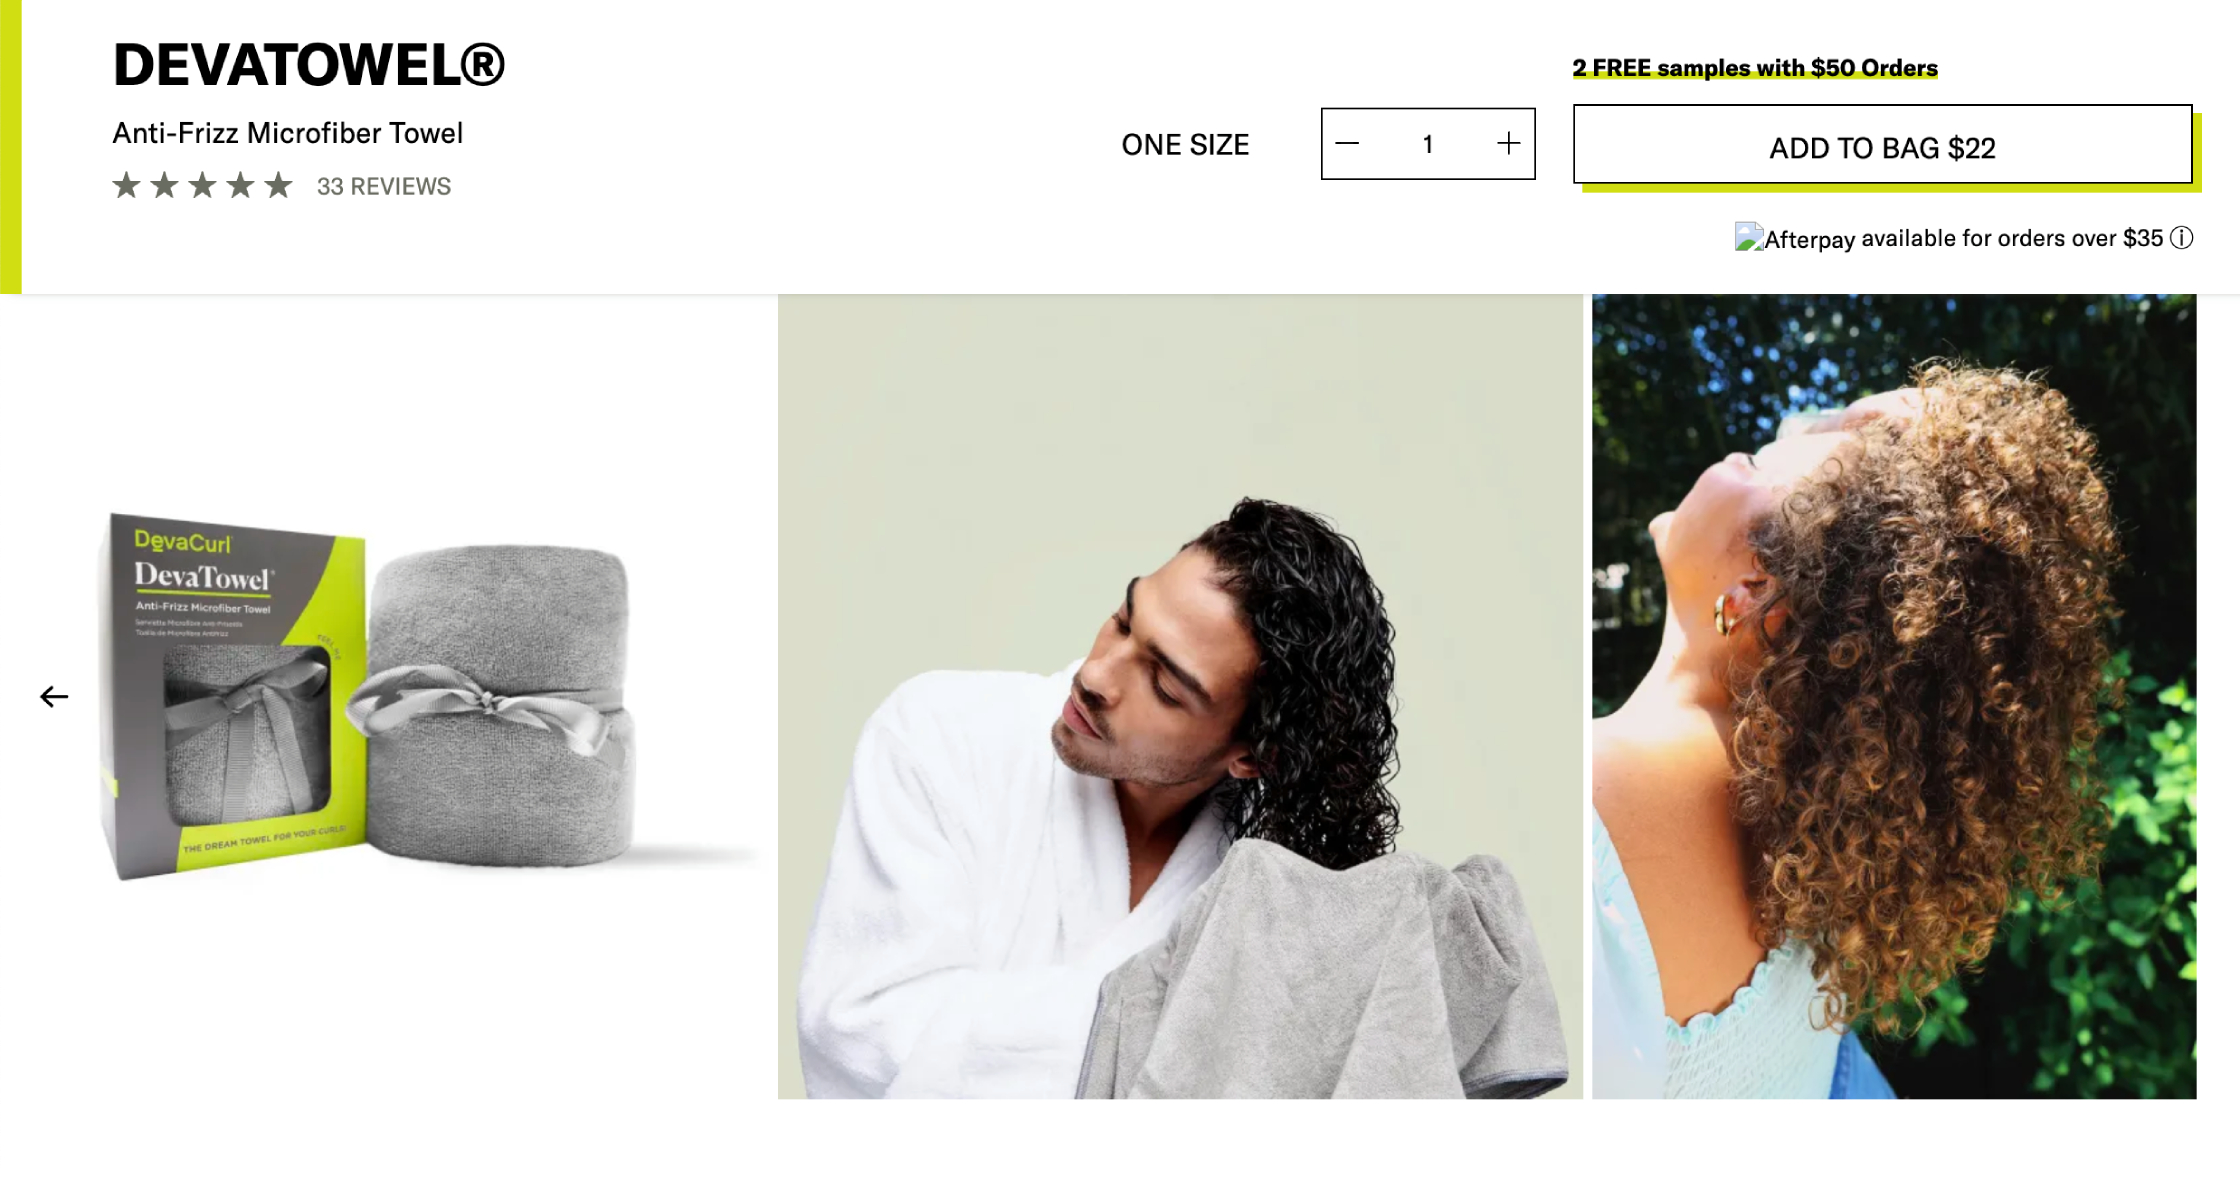 Похожие полотенца выпускают и некоторые бренды для кудрявых. Например, у DevaCurl такие стоят 25 $. Источник: devacurl.com